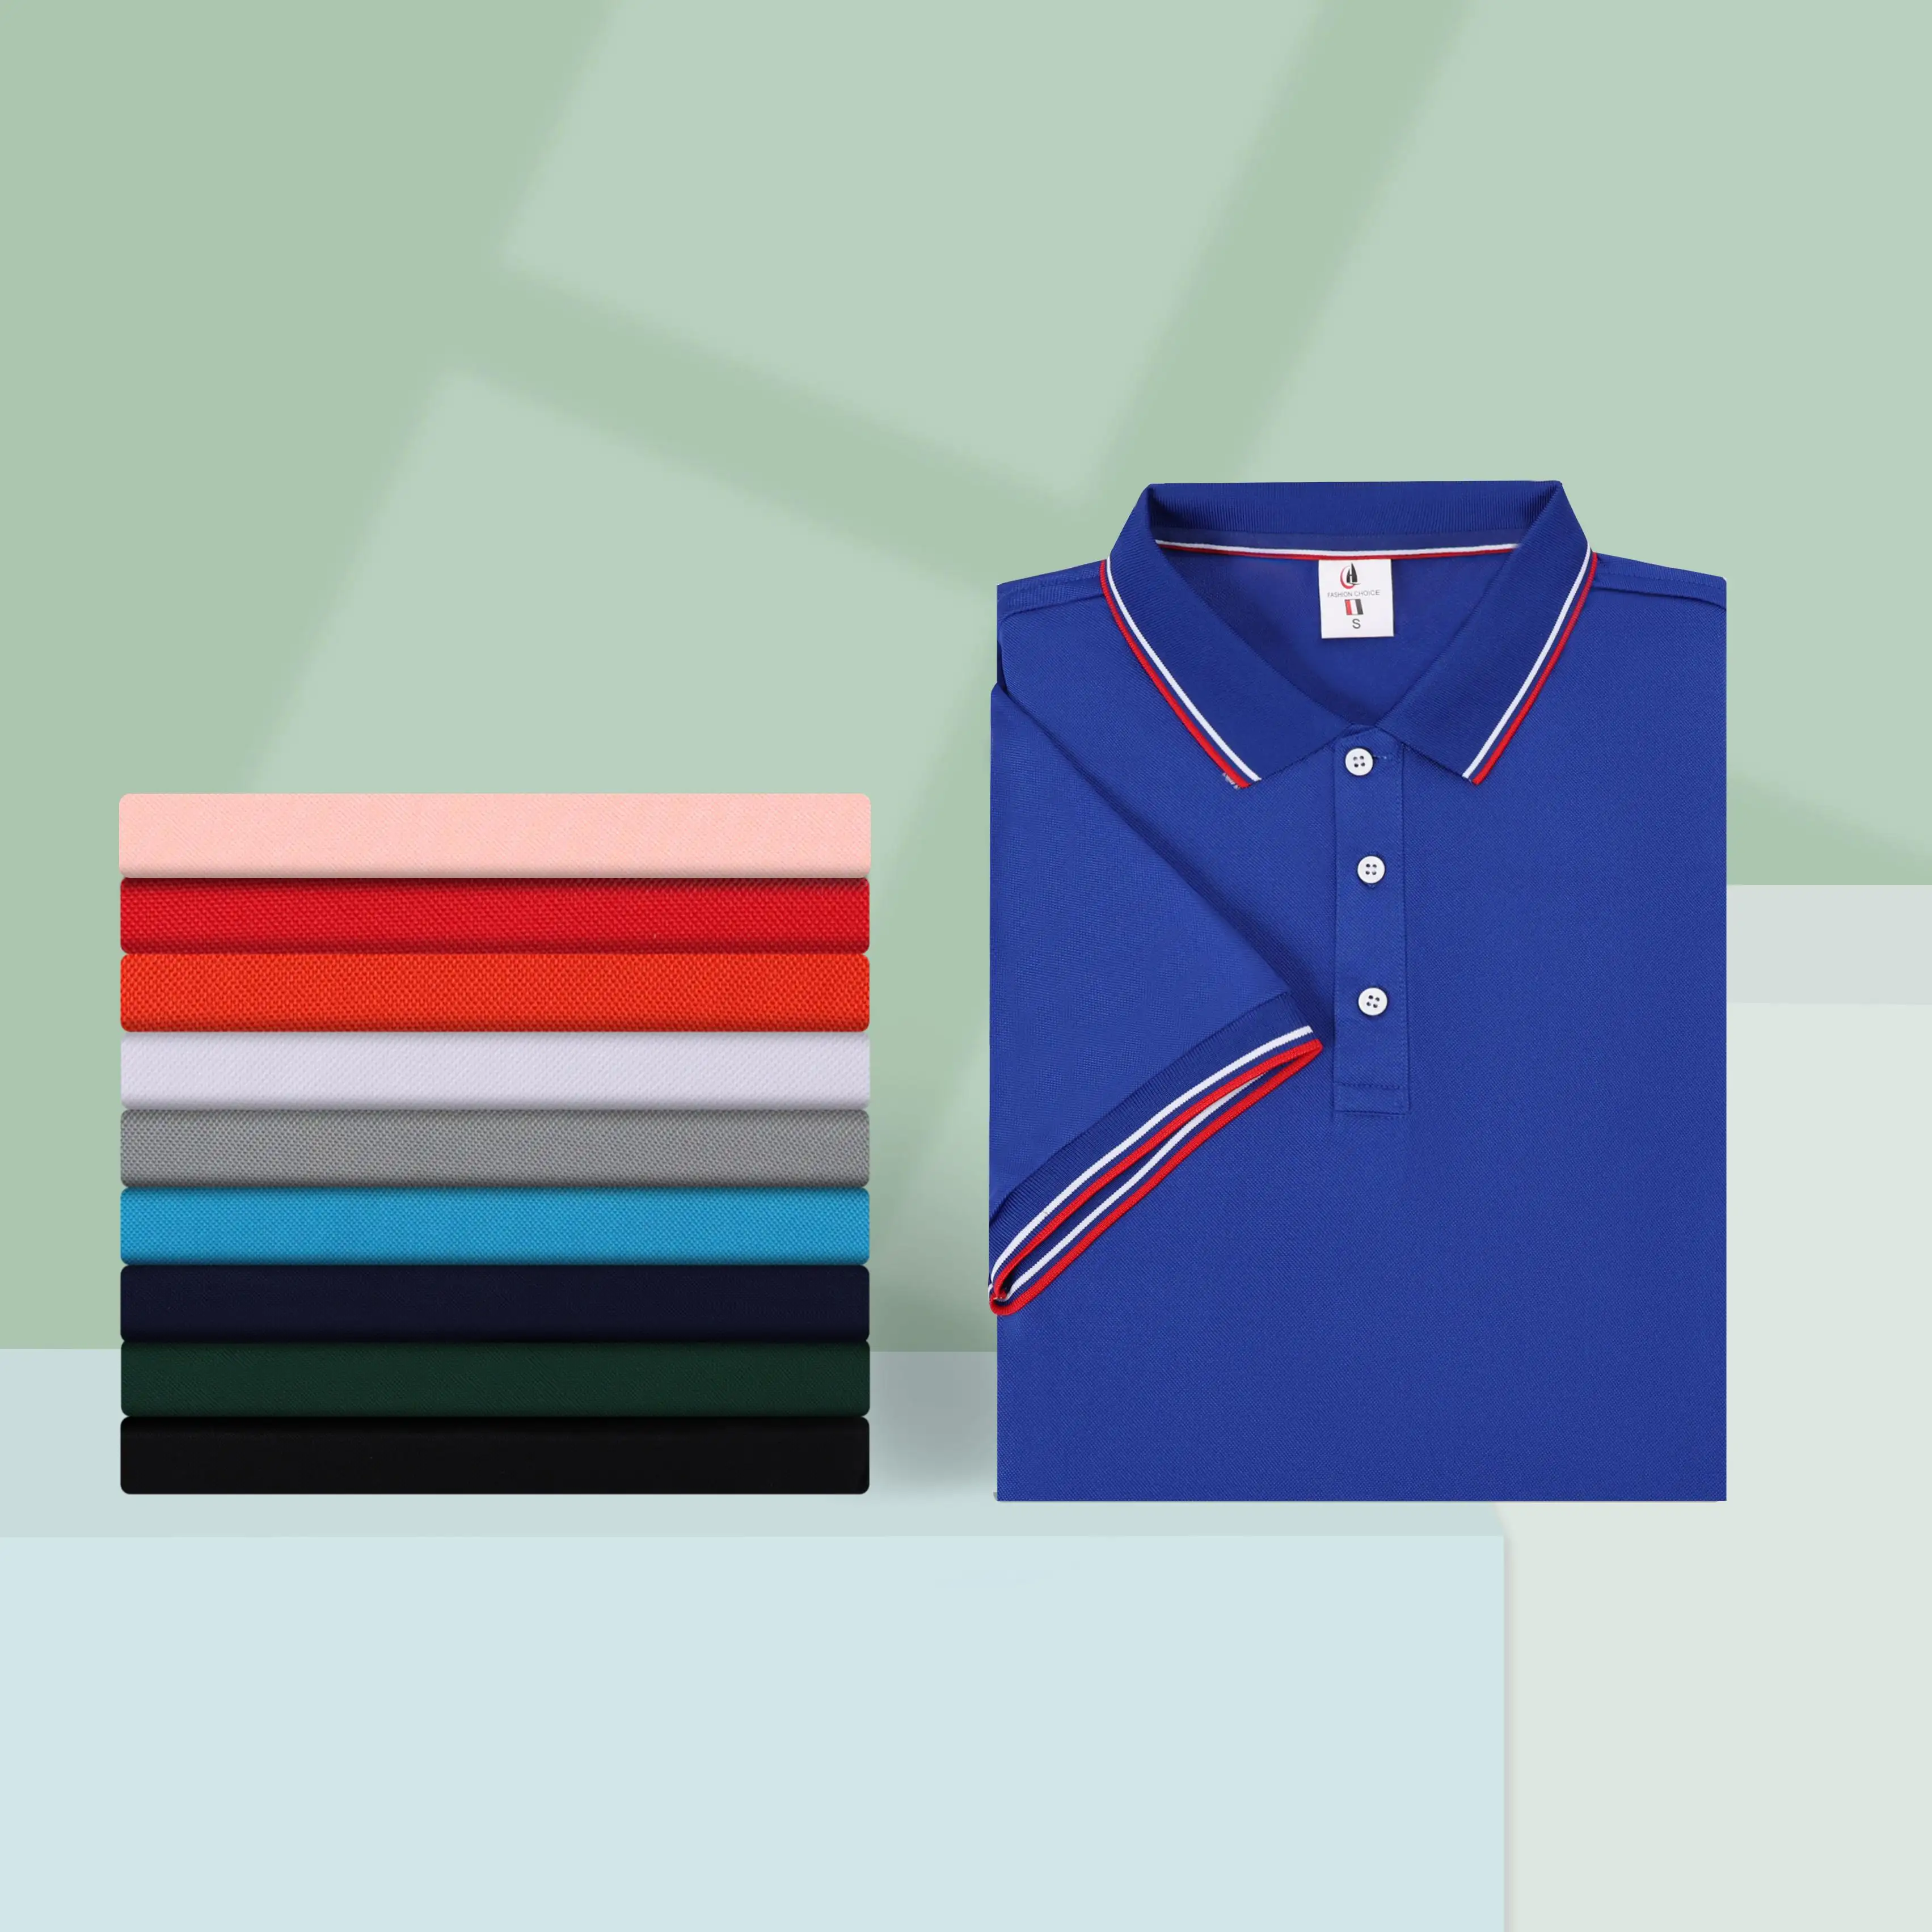 En kaliteli pamuk özel nakış logosu erkek Polo gömlekler rahat marka spor Home ev moda erkek Tops